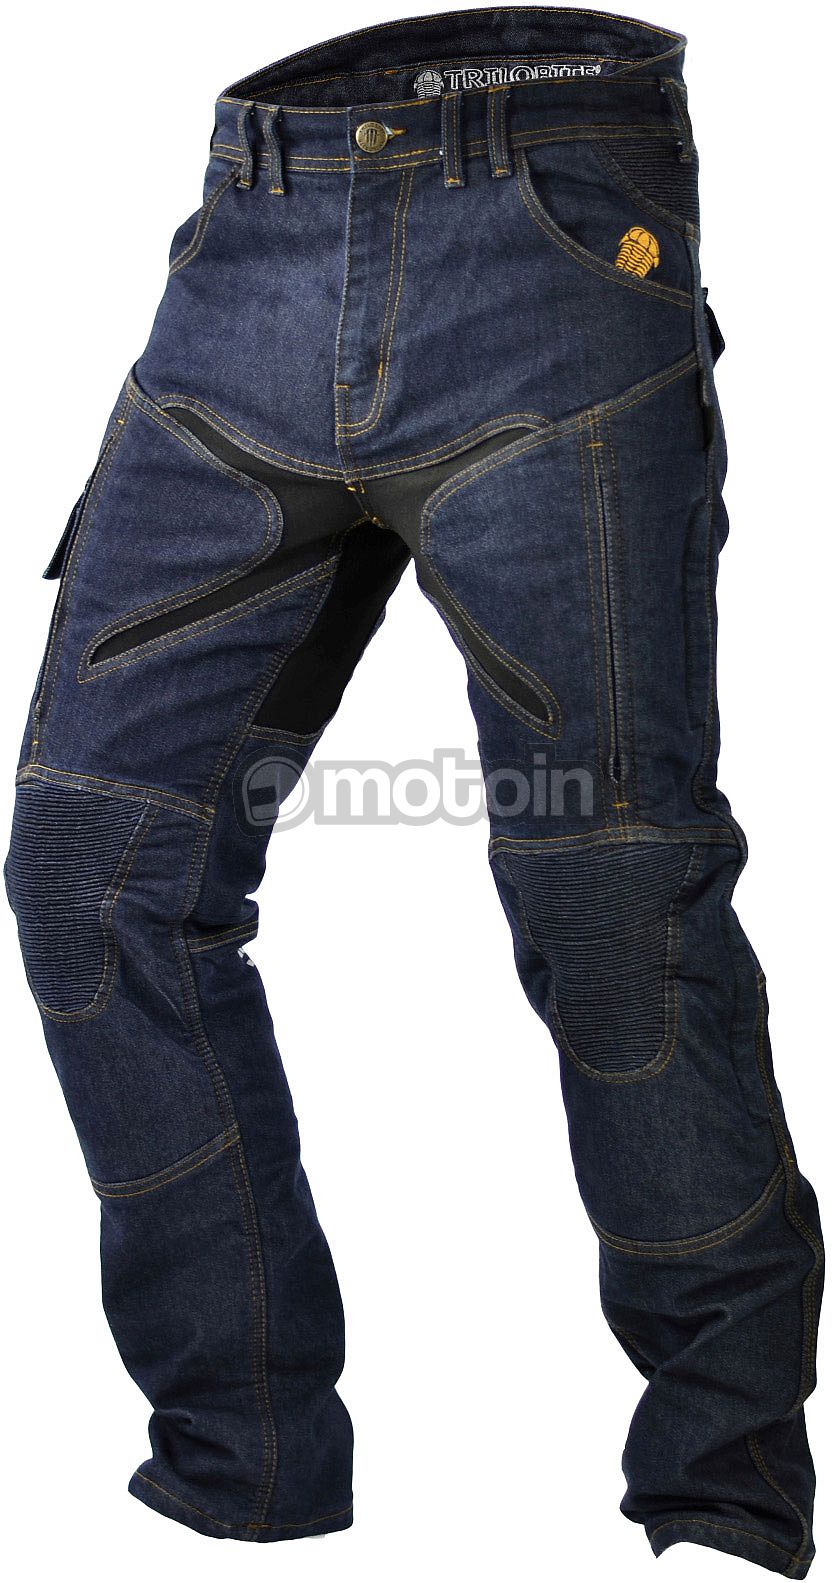 Trilobite Probut X-Factor, jeans